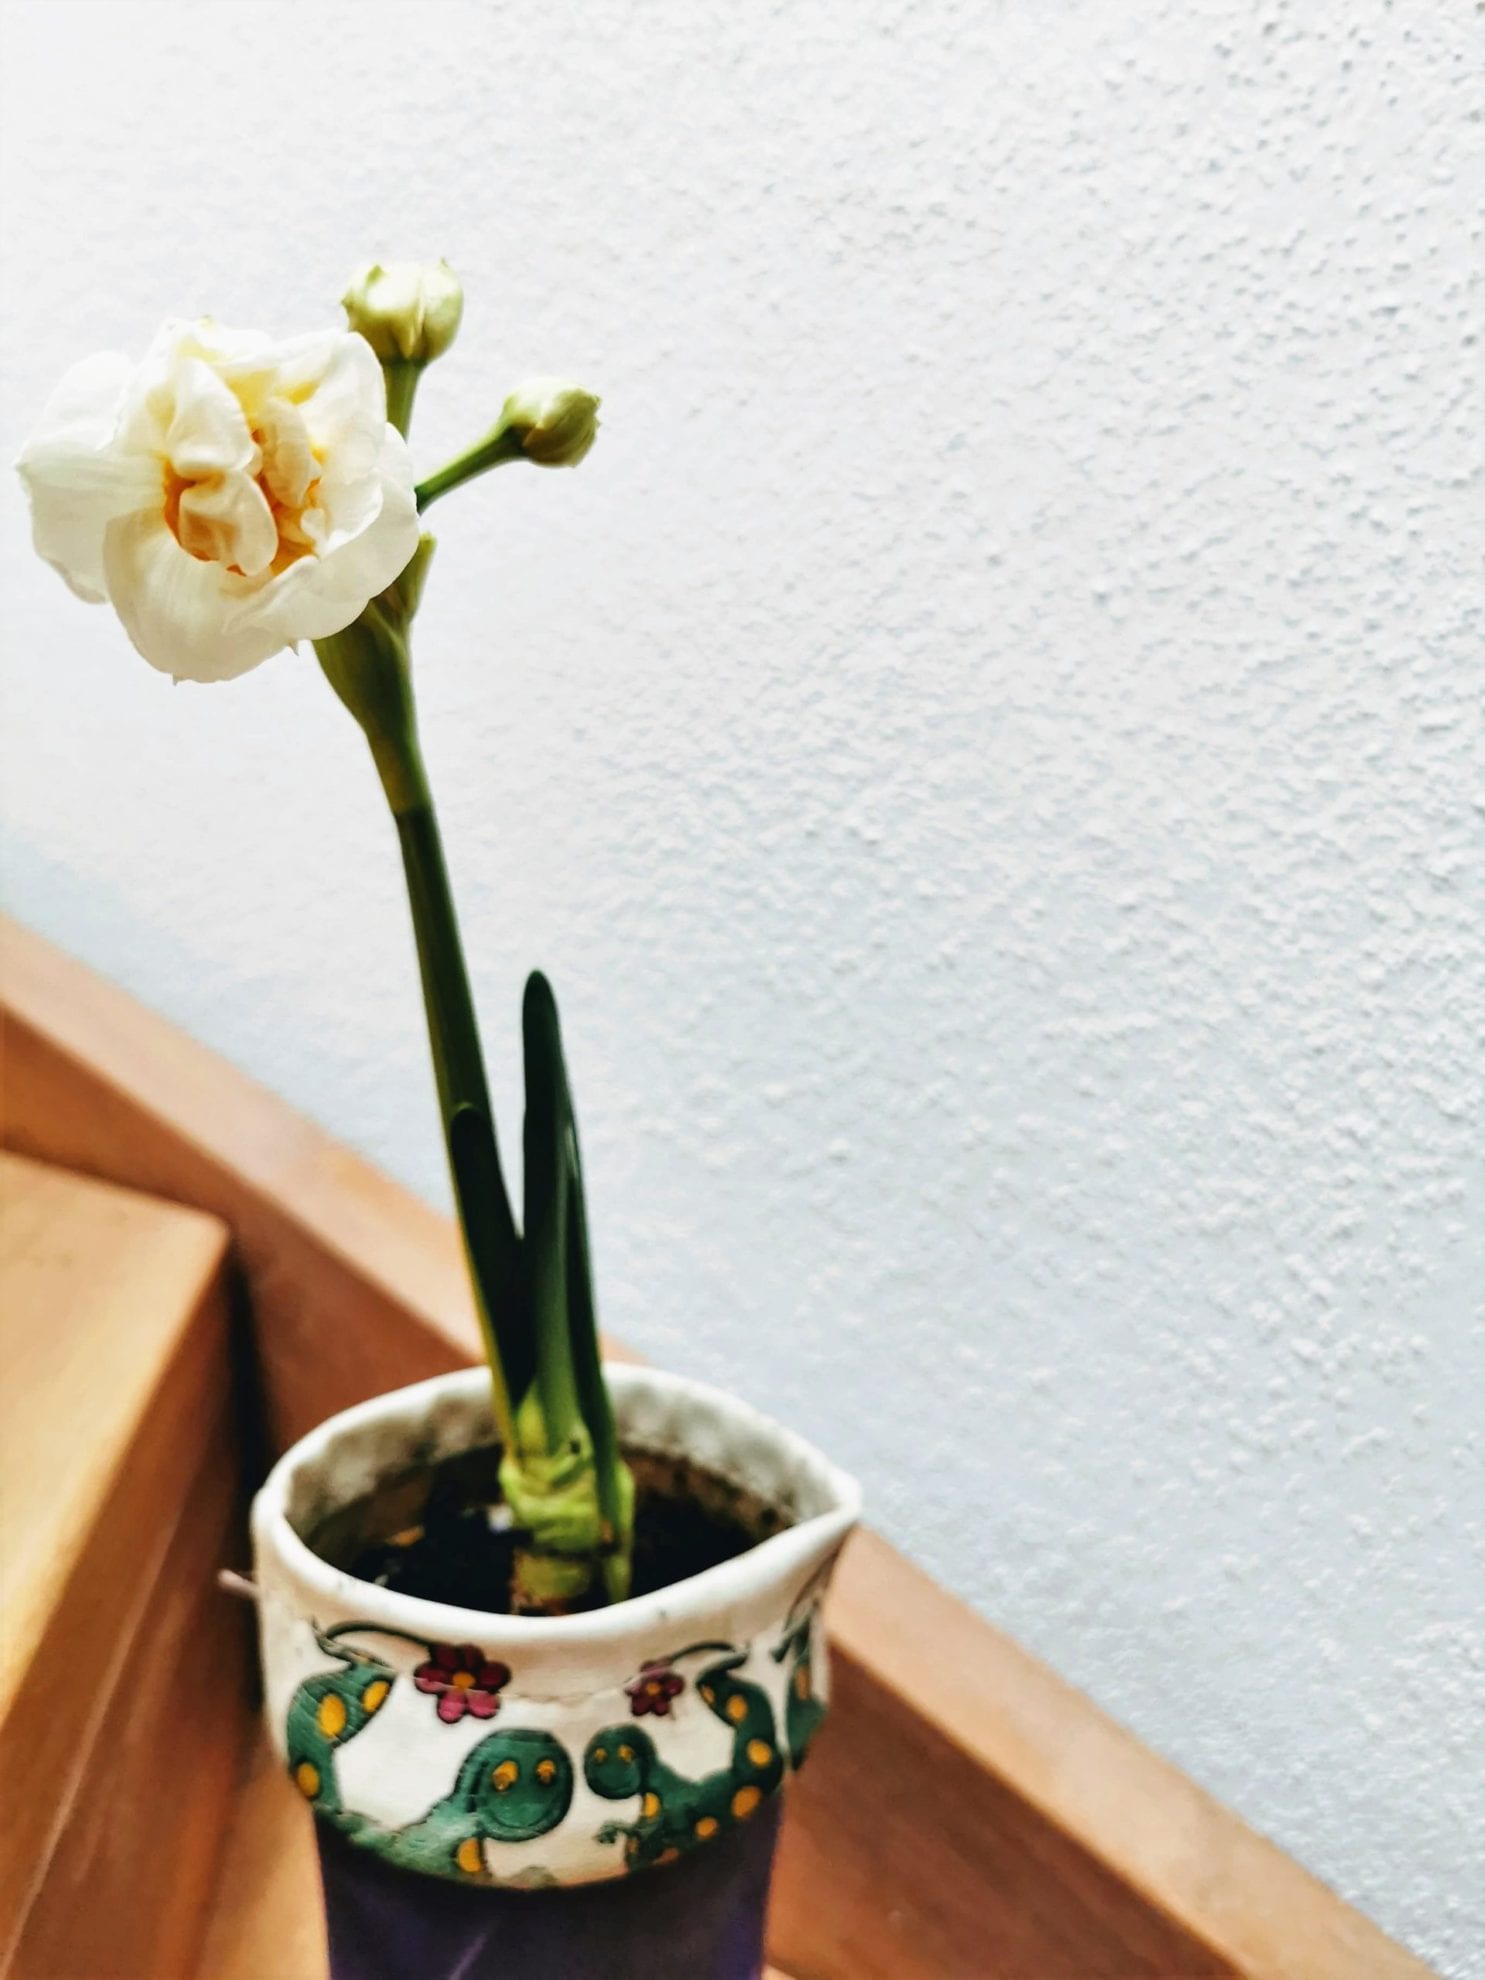 Gummistiefel erblühen mit frischen Blumen - ein Basteltipp auf Puddingklecks, dem Großfamilienblog